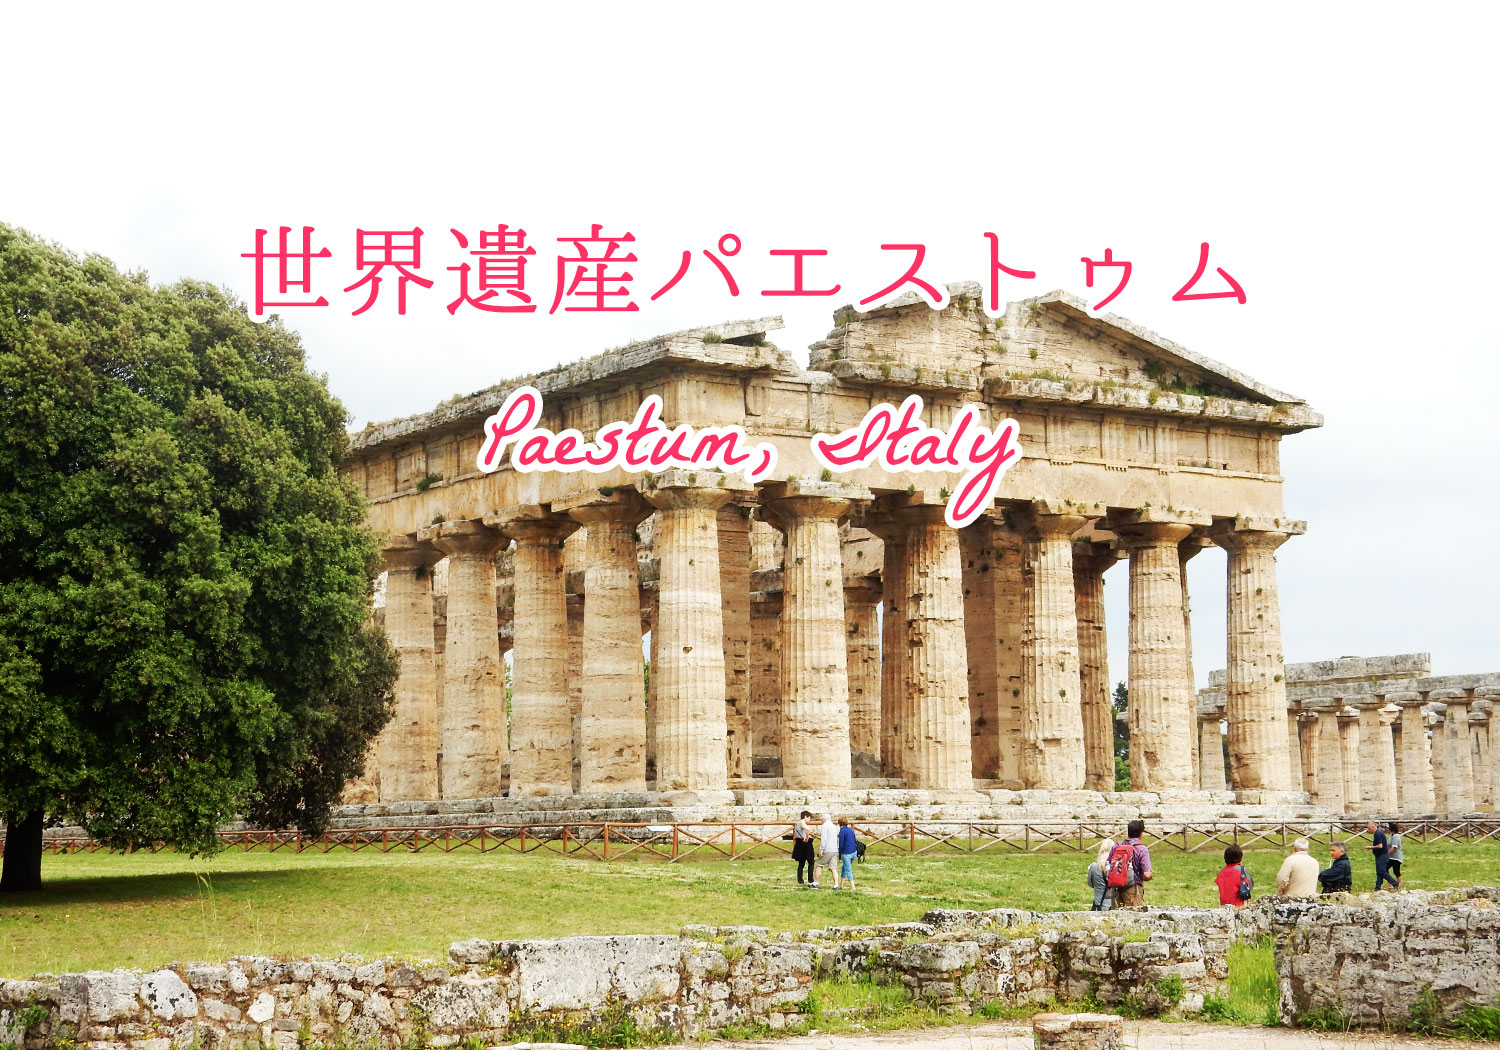 ナポリから１時間の古代ギリシャ遺跡 世界遺産パエストゥム Paestum がすごく素敵だった Webマーケティングと旅とアート